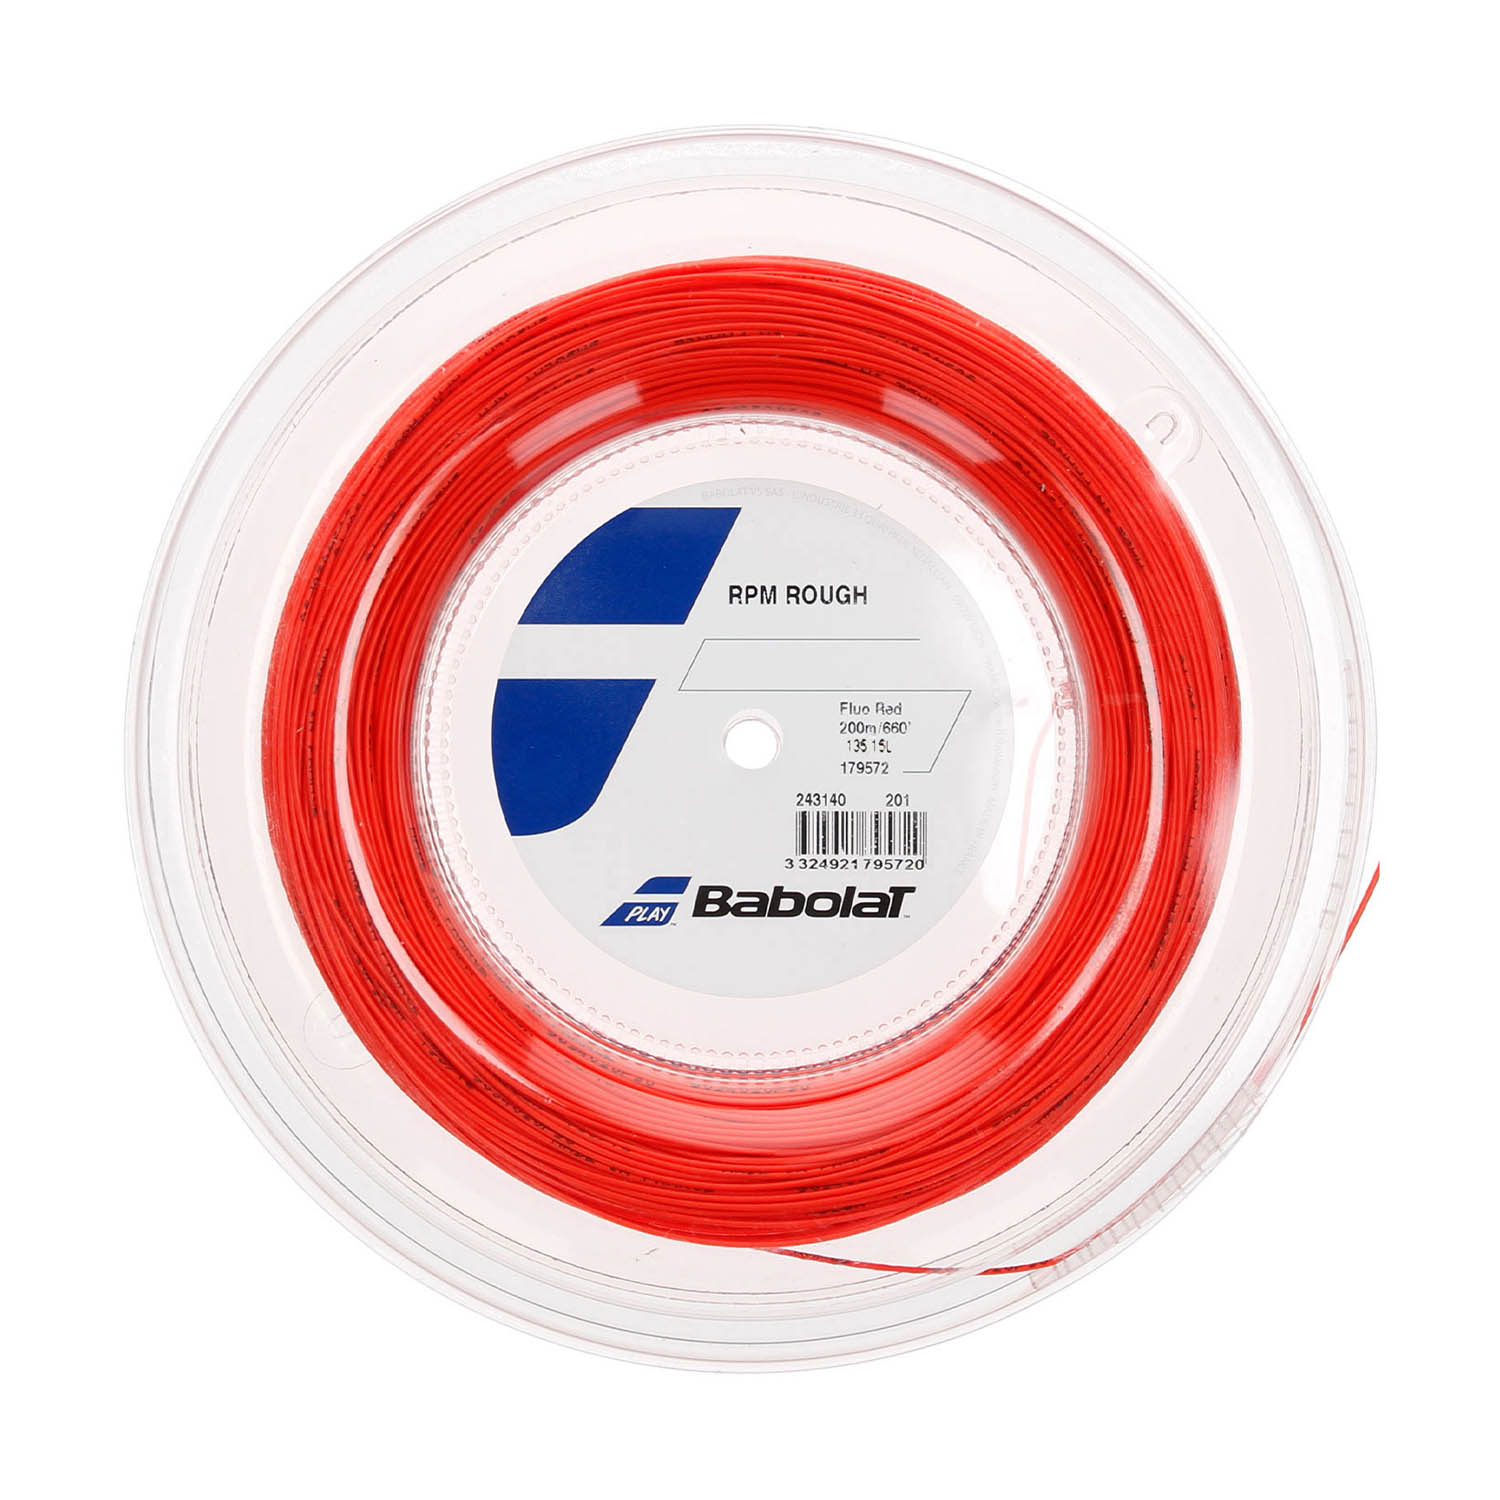 Babolat RPM Rough 1.35 Matassa 200 m - Red Fluo